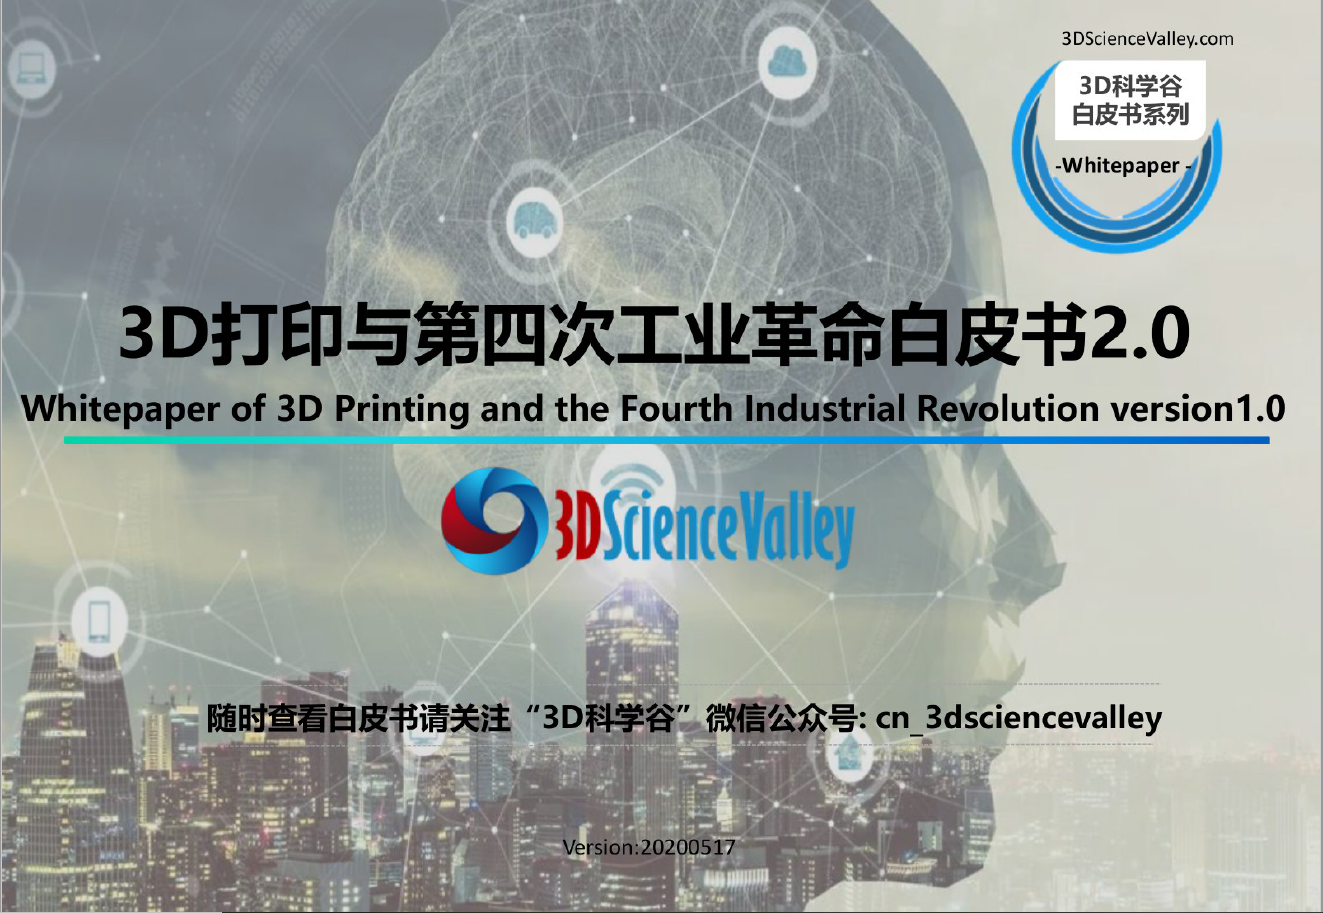 第四次工业革命白皮书第二版_3D科学谷发布